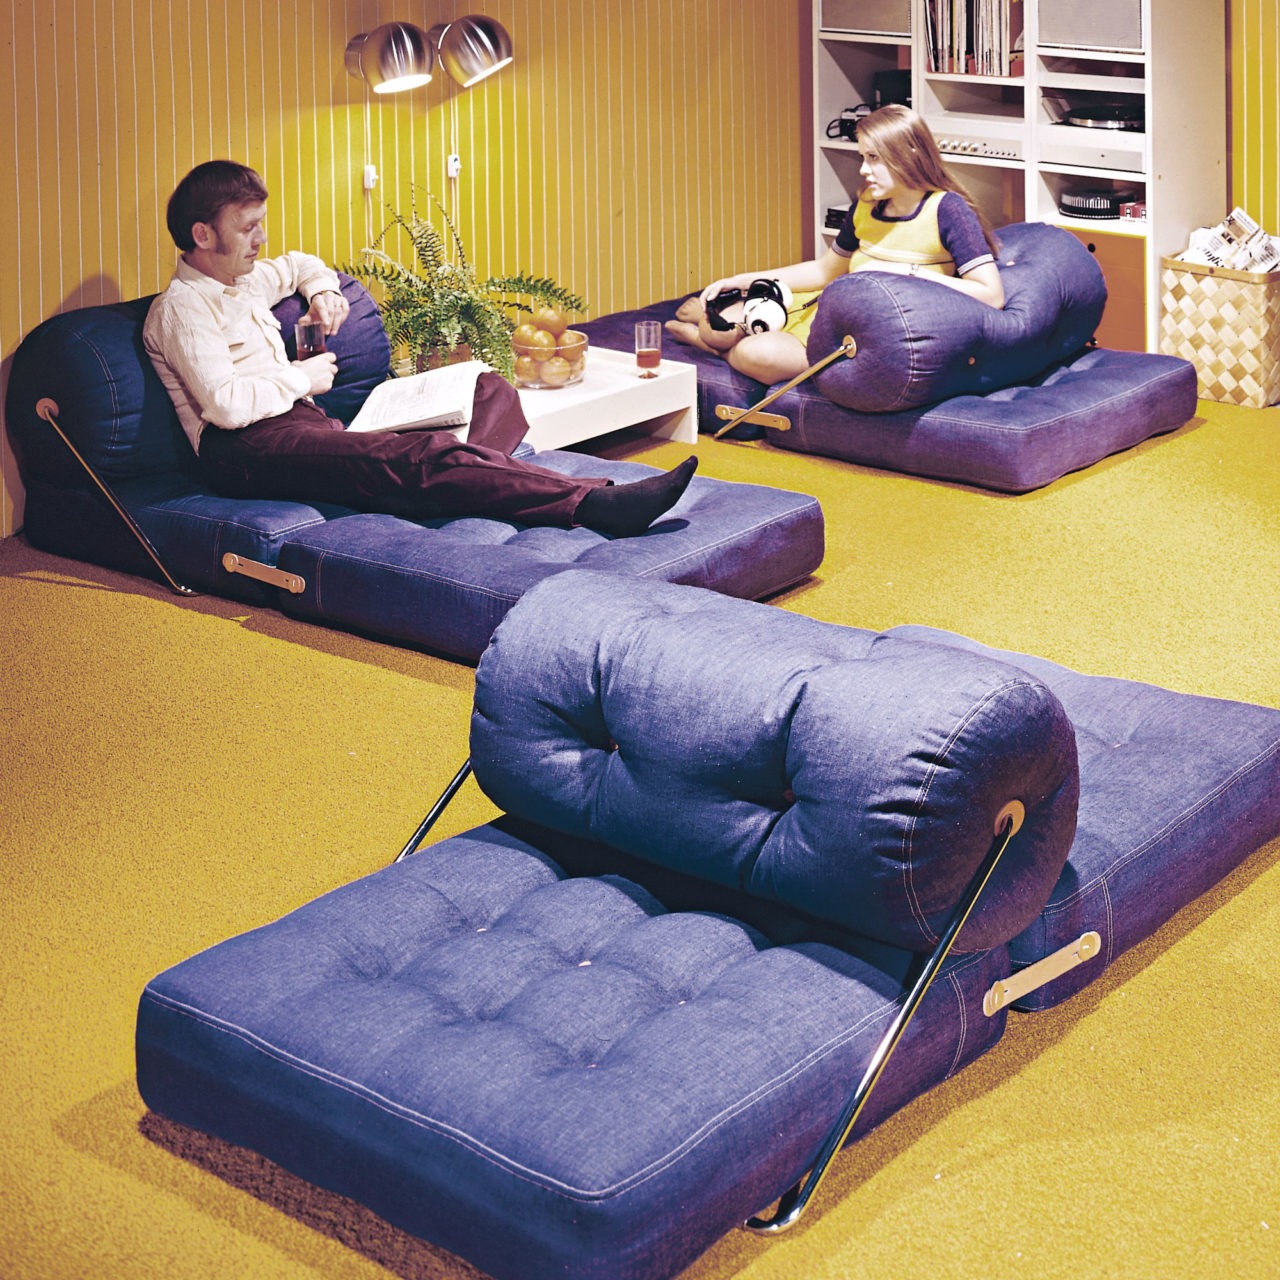 TAJT Sitzmöbel mit Jeansbezug, zur Chaiselongue ausgeklappt. Verteilt in einem Raum mit gelbem Teppichboden.